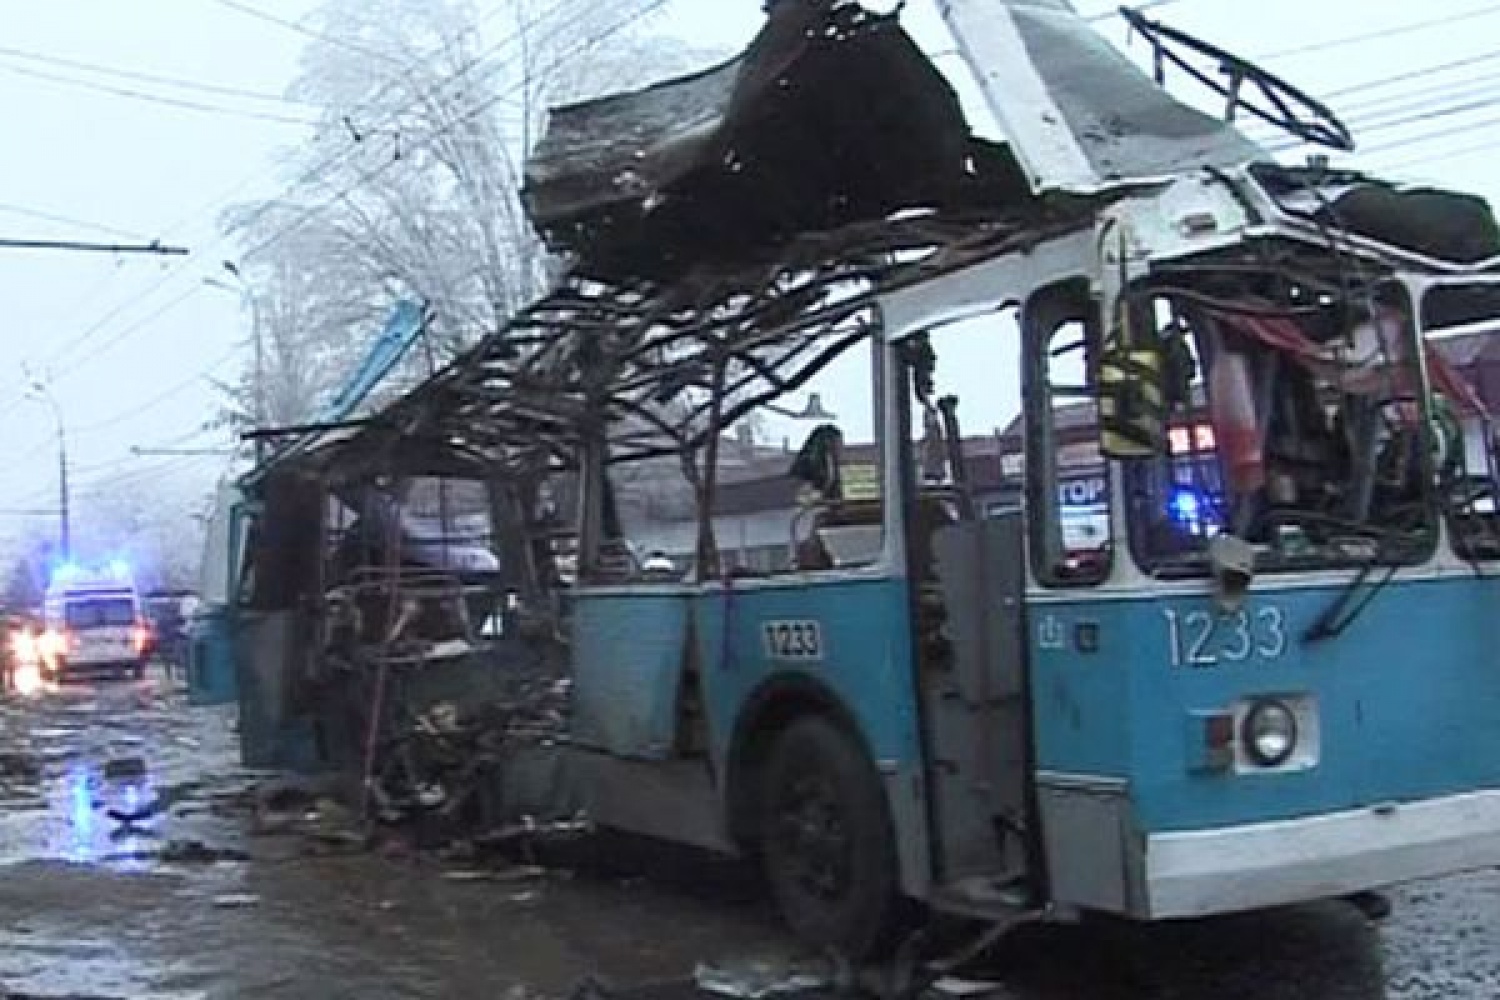 30 декабря 23 год. 30 Декабря 2013 год Волгоград взрыв троллейбуса. Взорванный троллейбус в Волгограде. Теракт 30 декабря в Волгограде. Взрыв троллейбуса в Волгограде.